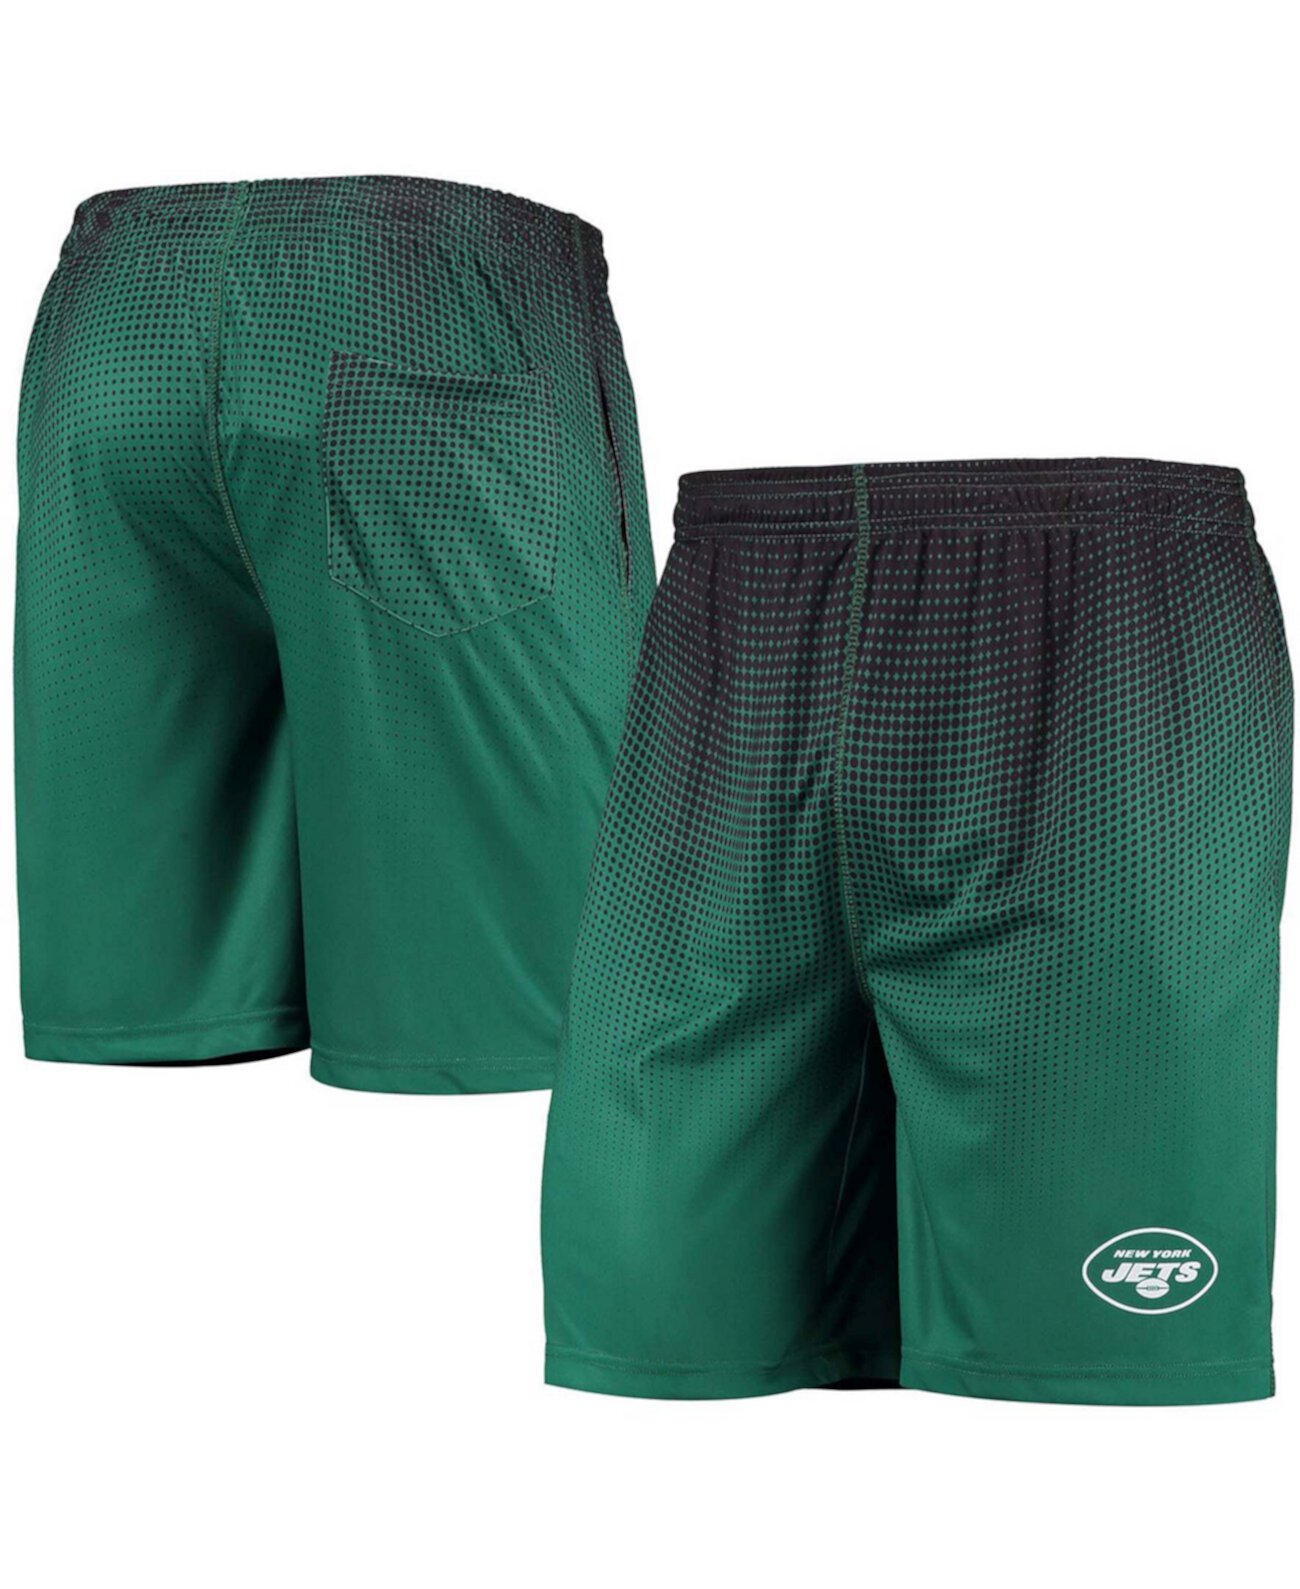 Мужские зеленые и черные шорты для тренинга New York Jets Pixel Gradient FOCO